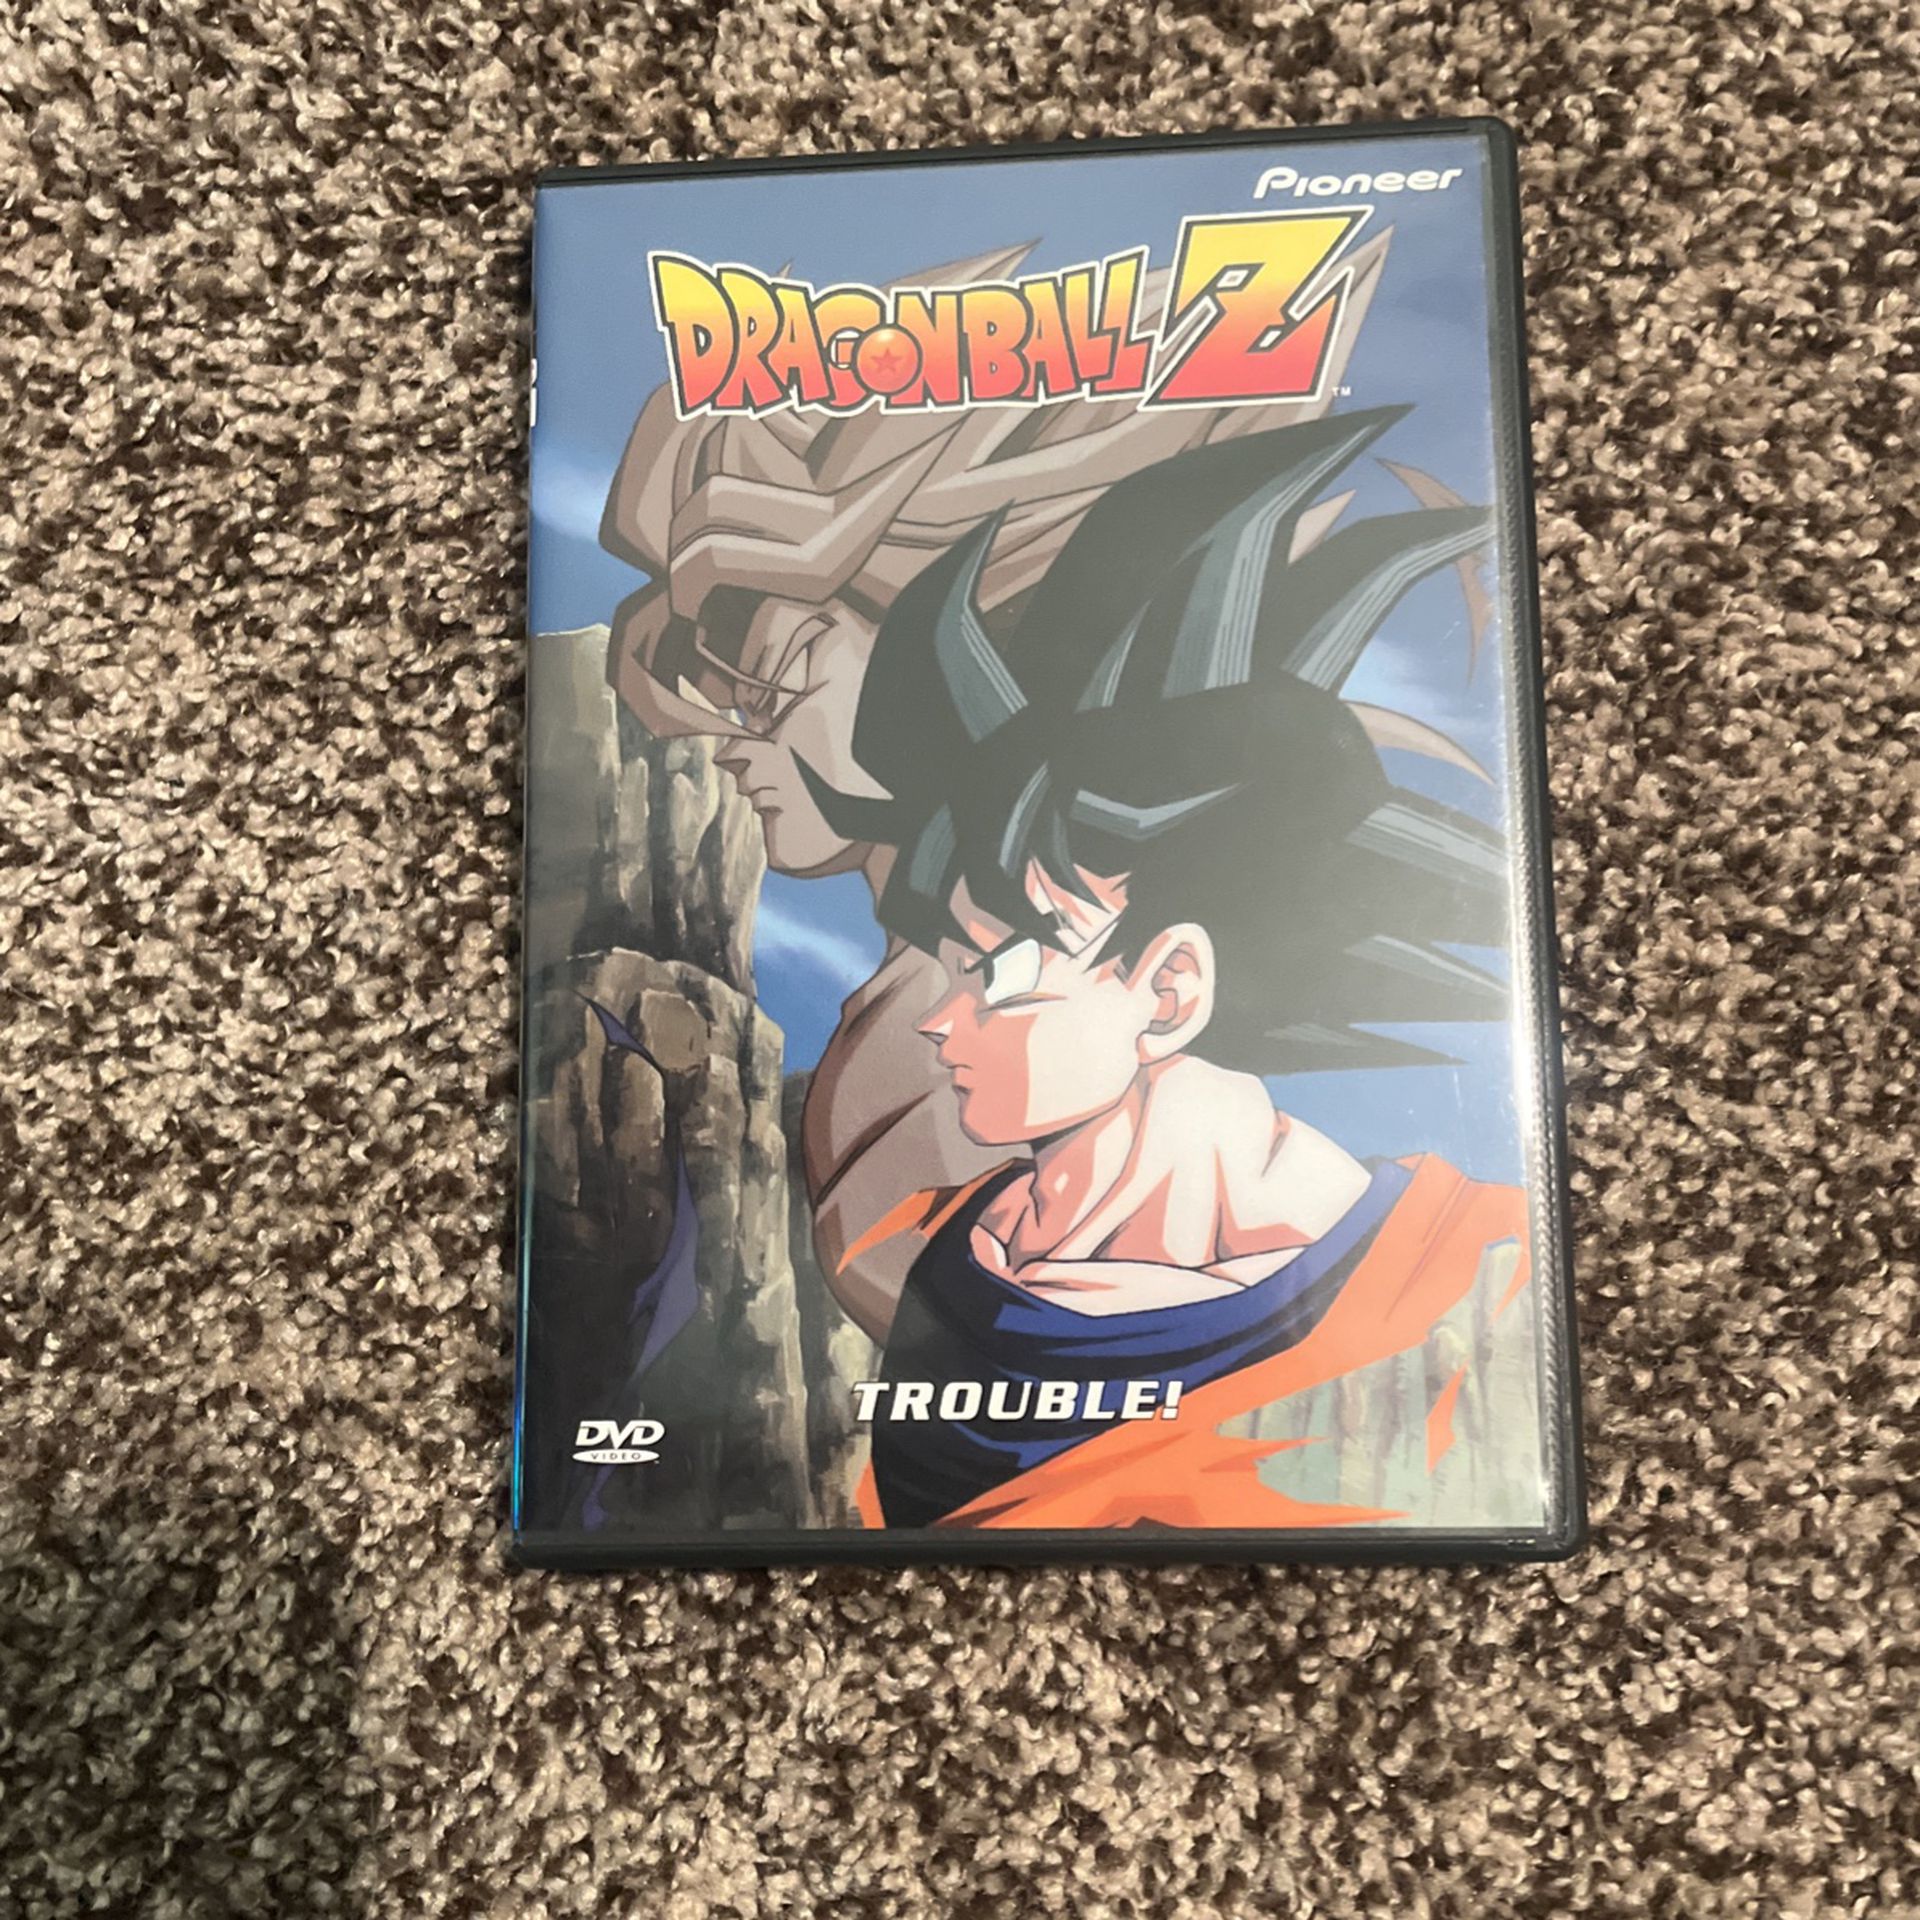 Dragon Ball Z Trouble! DVD